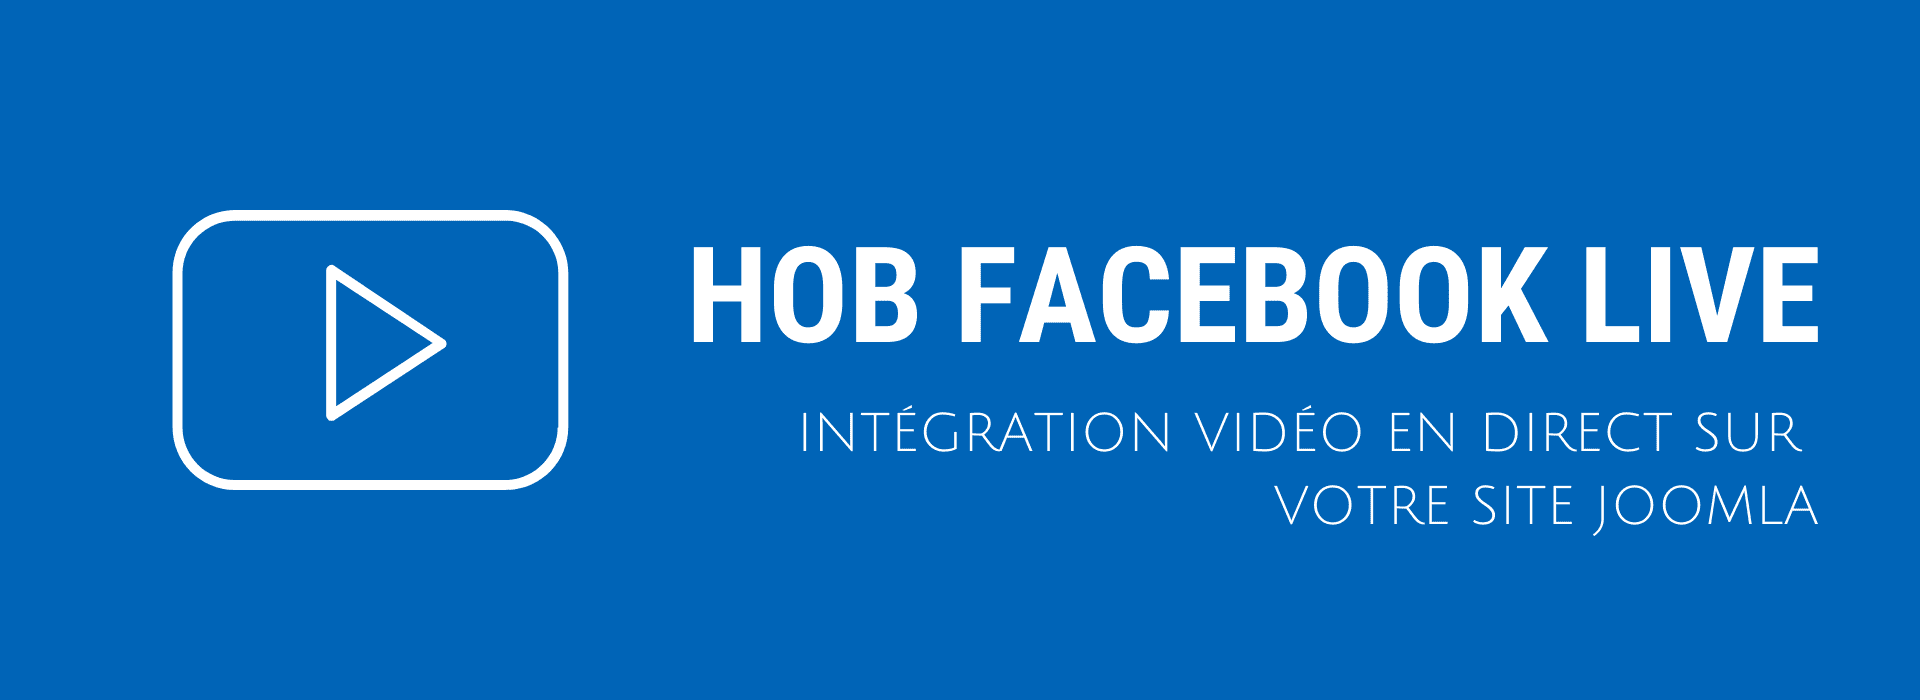 Module Joomla HOB Facebook Live pour intégrer les vidéos en direct Facebook Live sur site Joomla